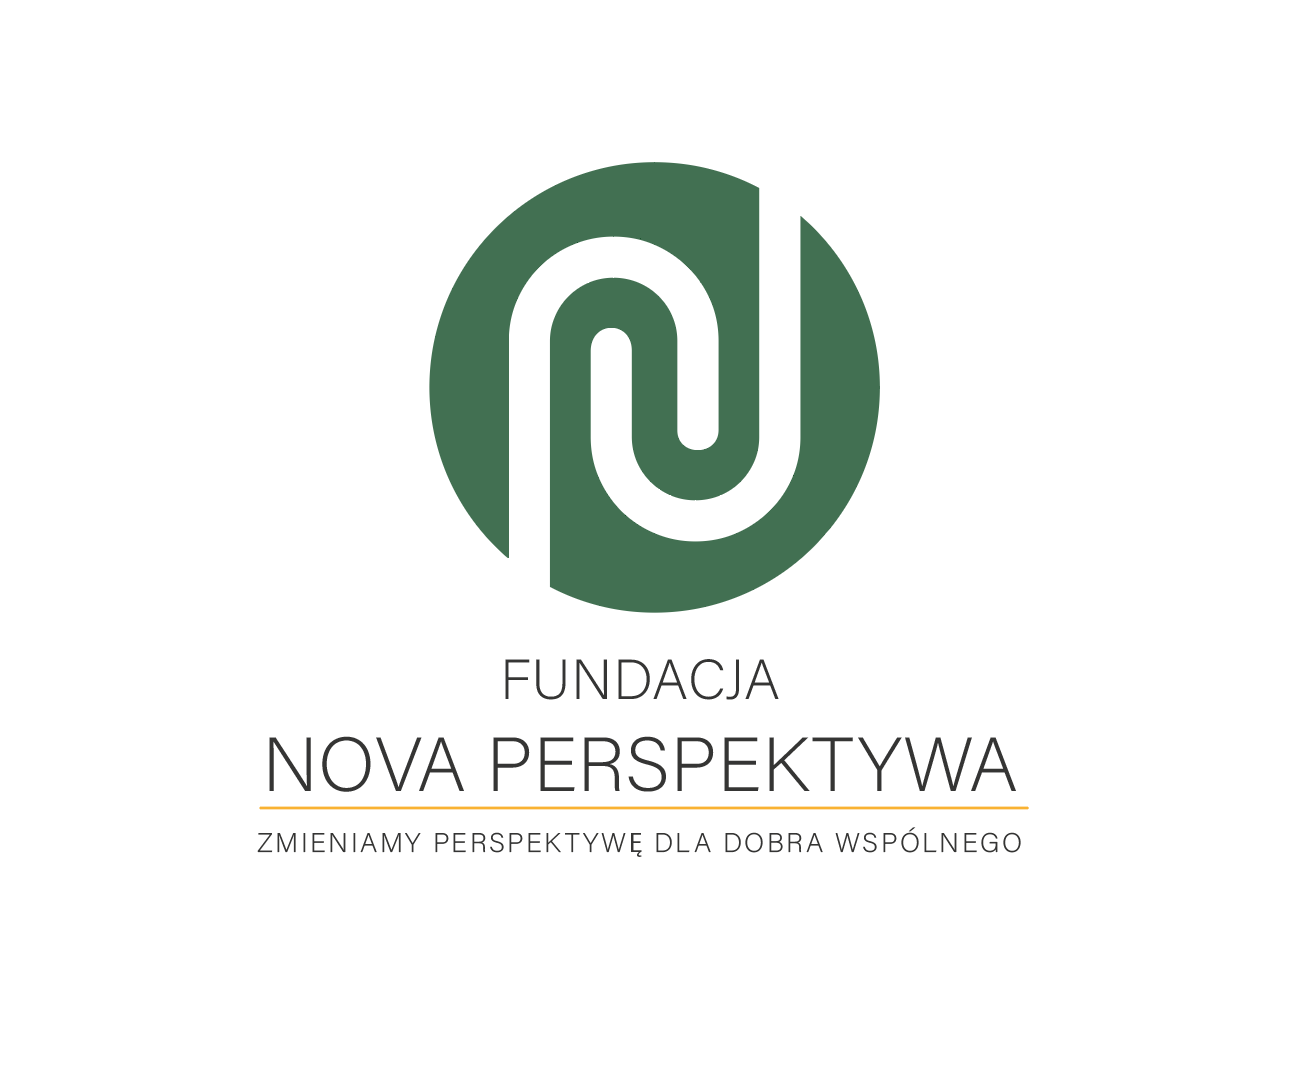 Fundacja Nova Perspektywa